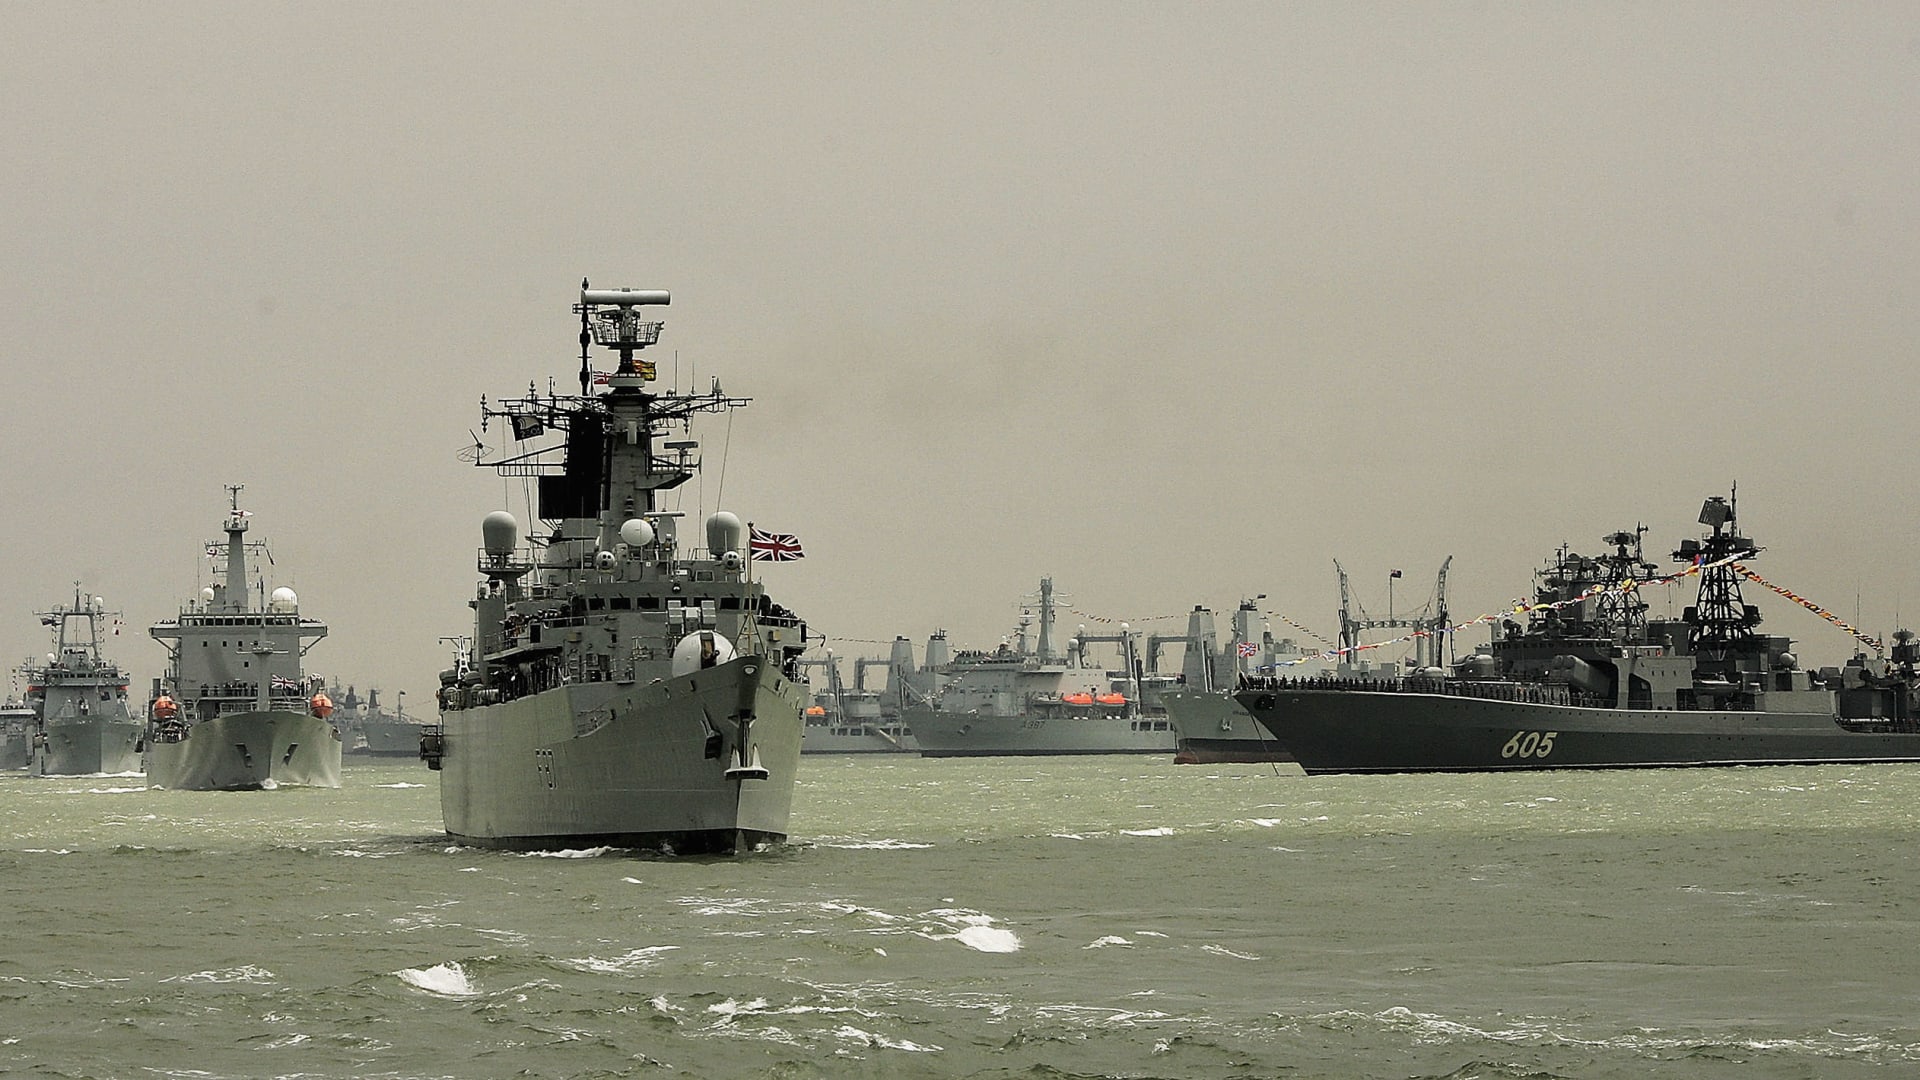 بالأرقام.. البحرية الإيرانية رابع أقوى أسطول بالعالم أمام بريطانيا